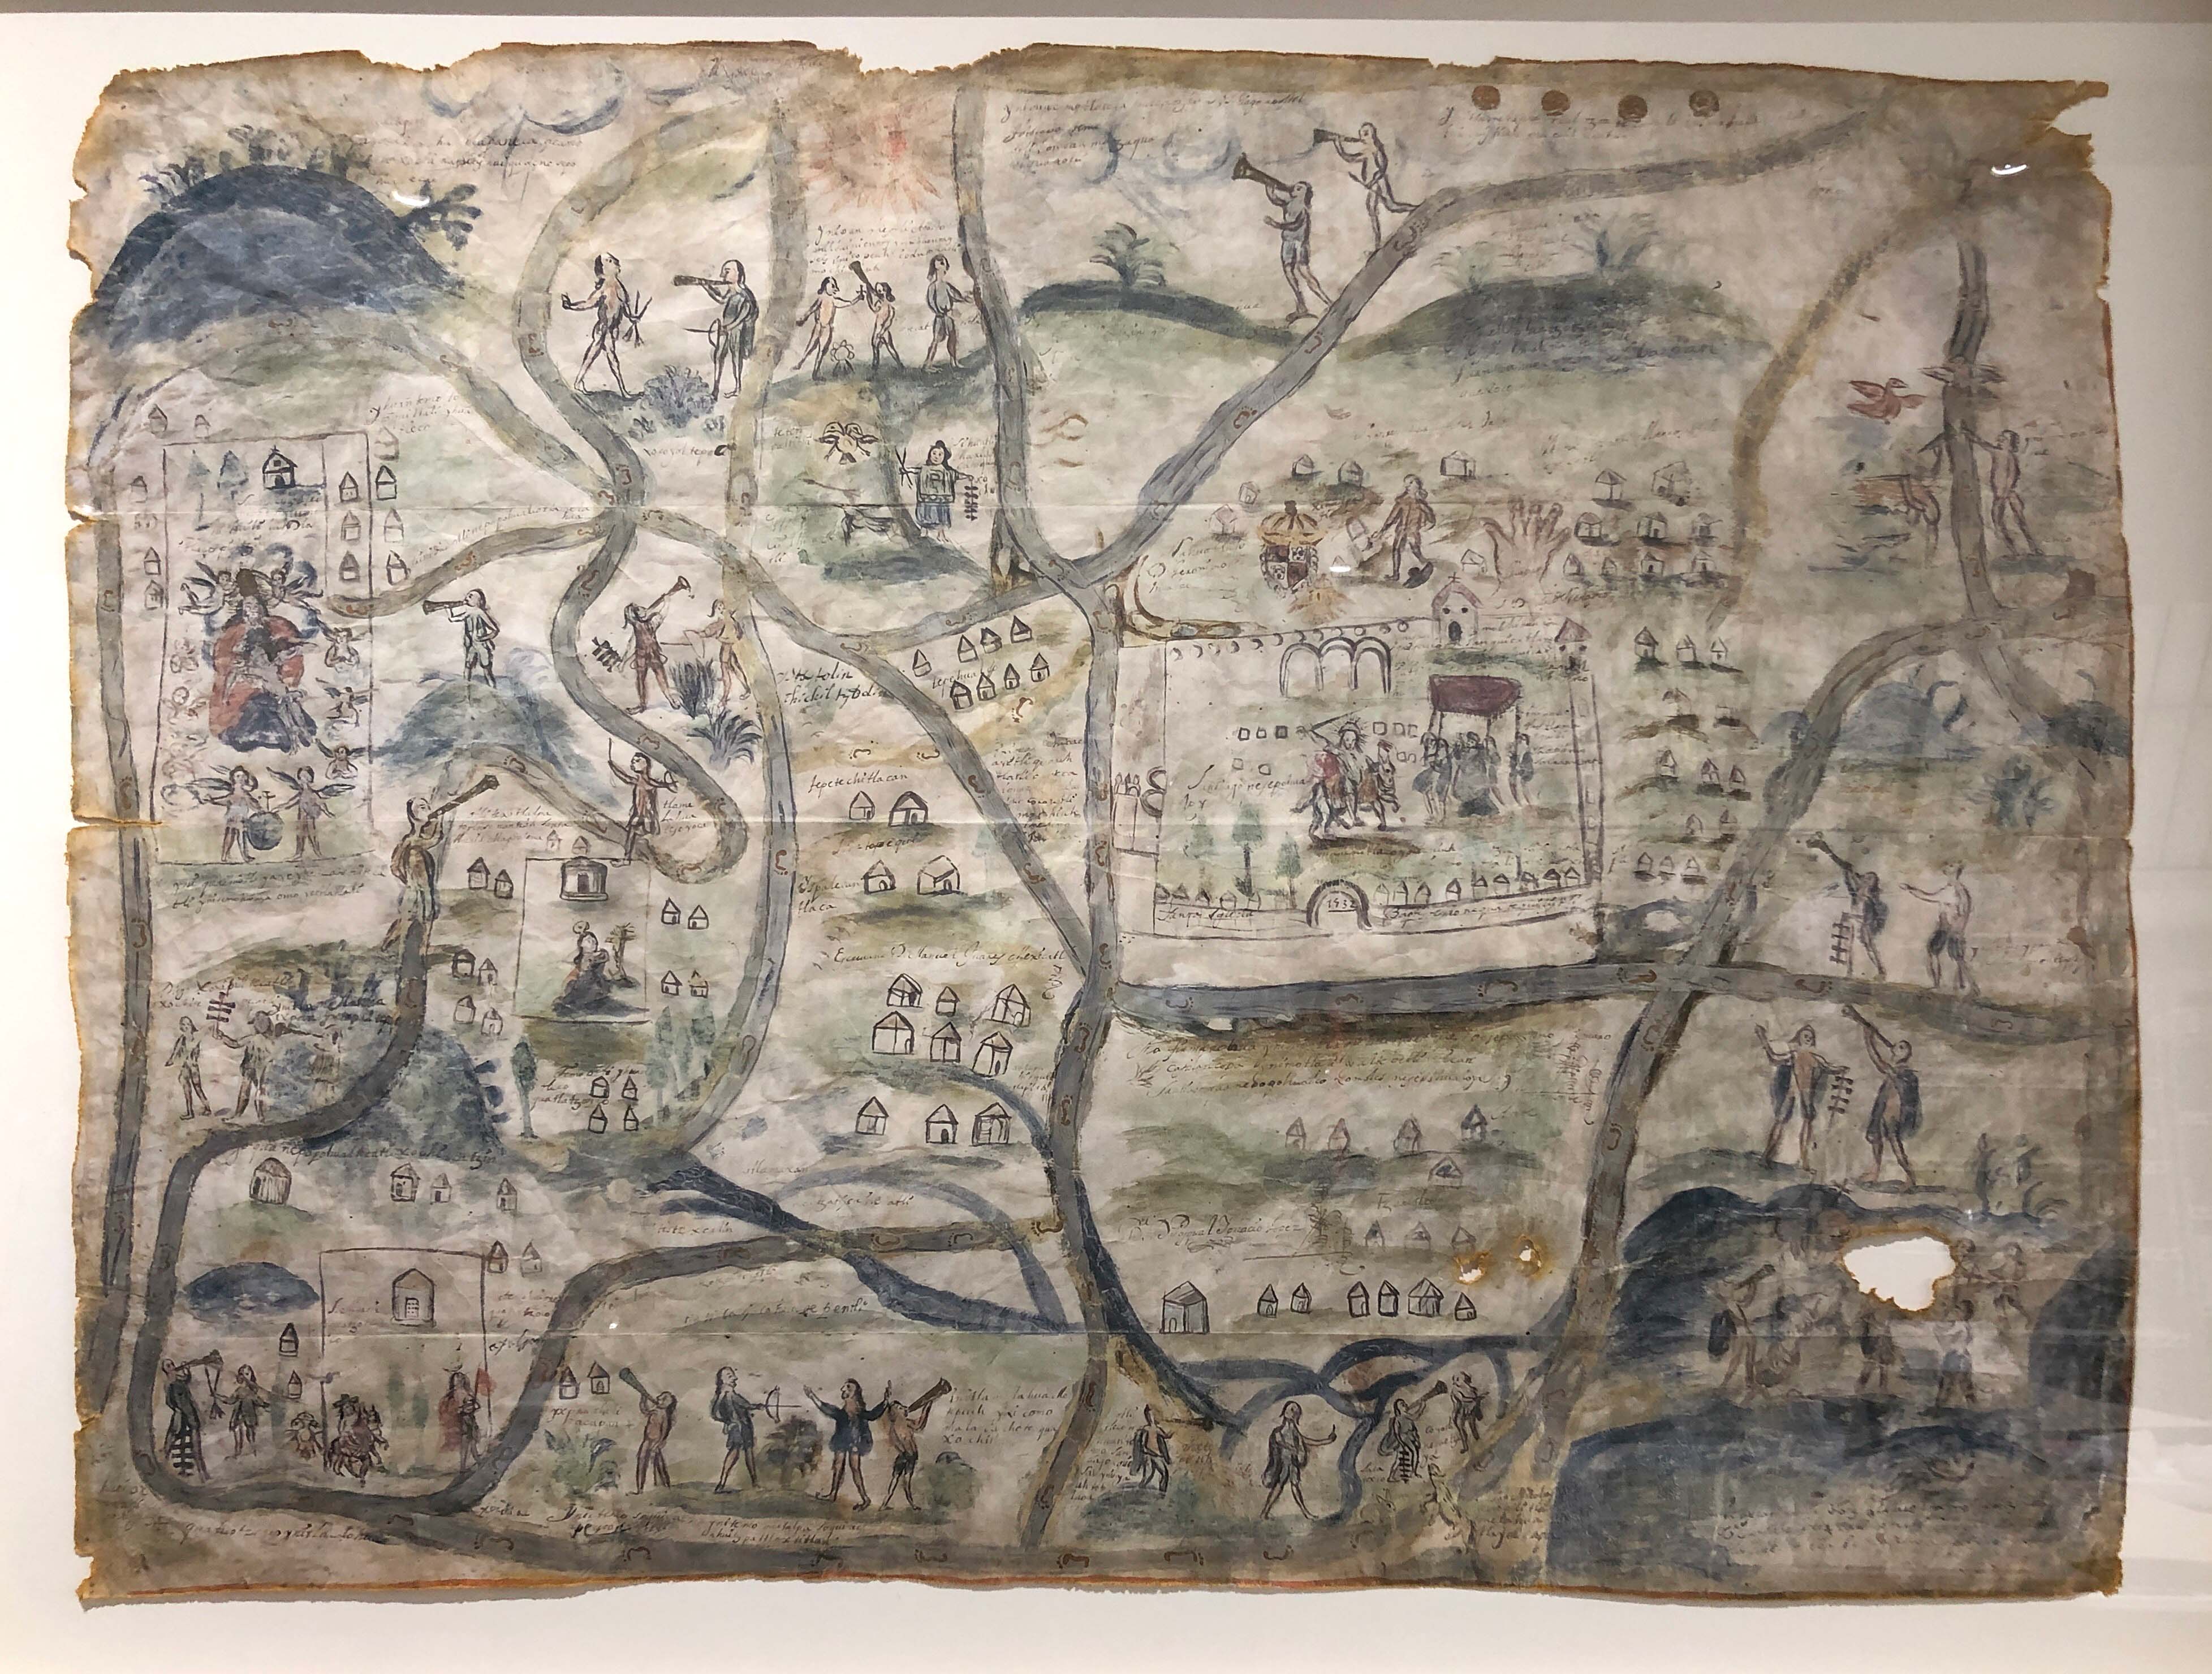 Map of Santiago Quanepopohualco, Xomolco, San Martin Quatzotzoco, Hidalgo, 1532 (2021 copy)